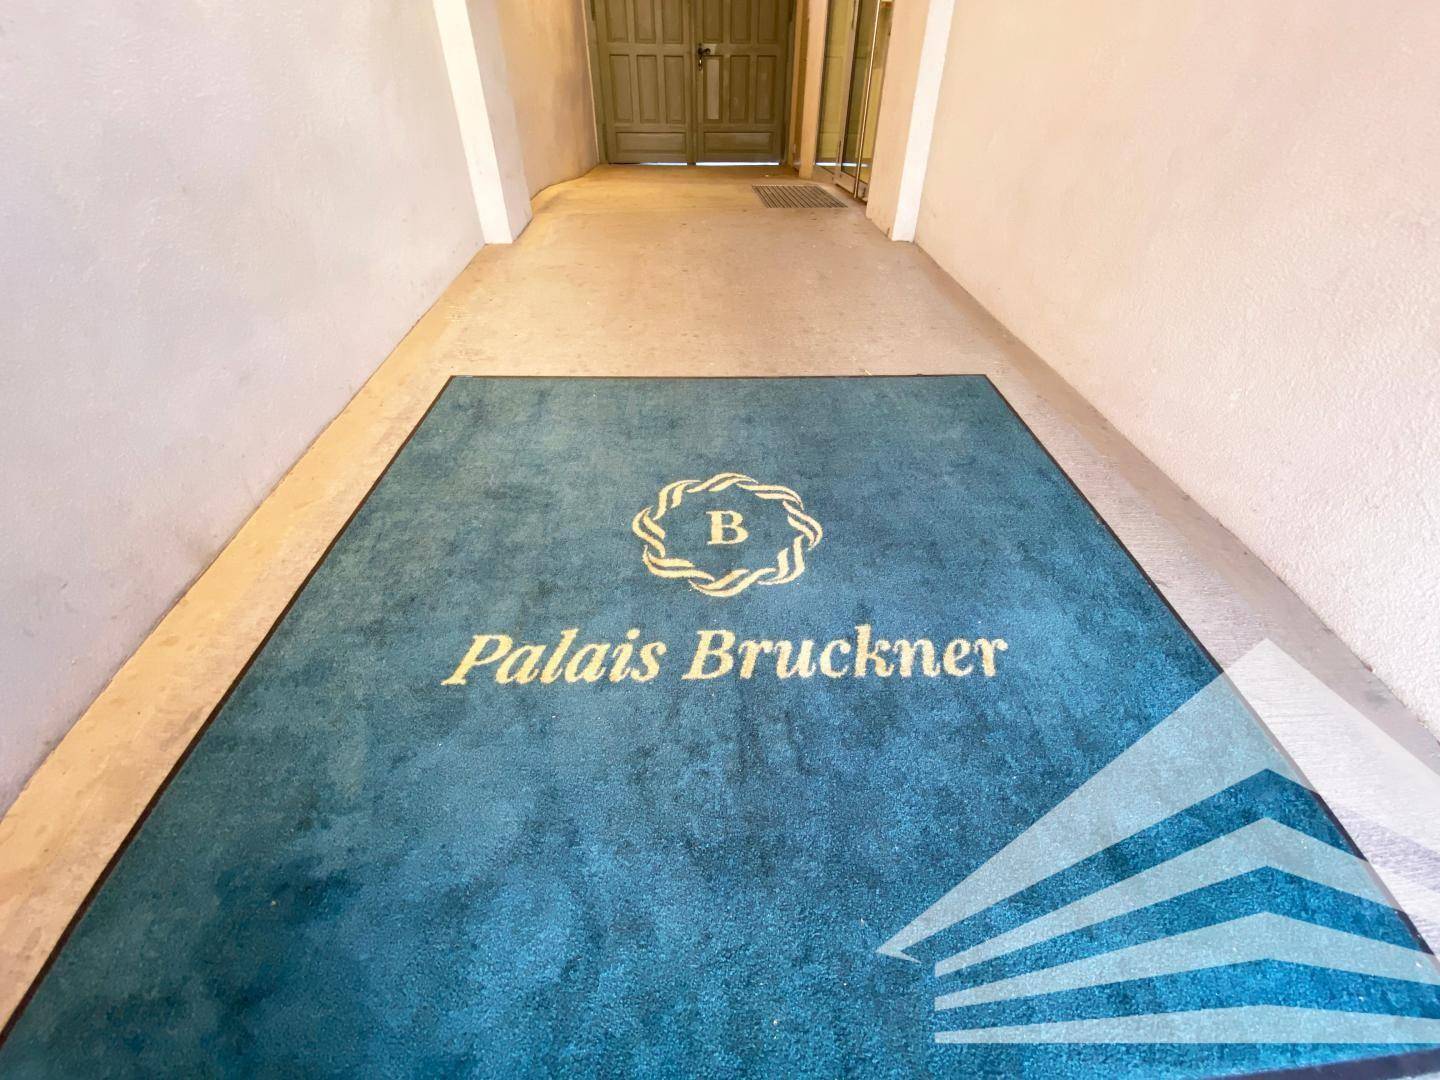 Palais Bruckner